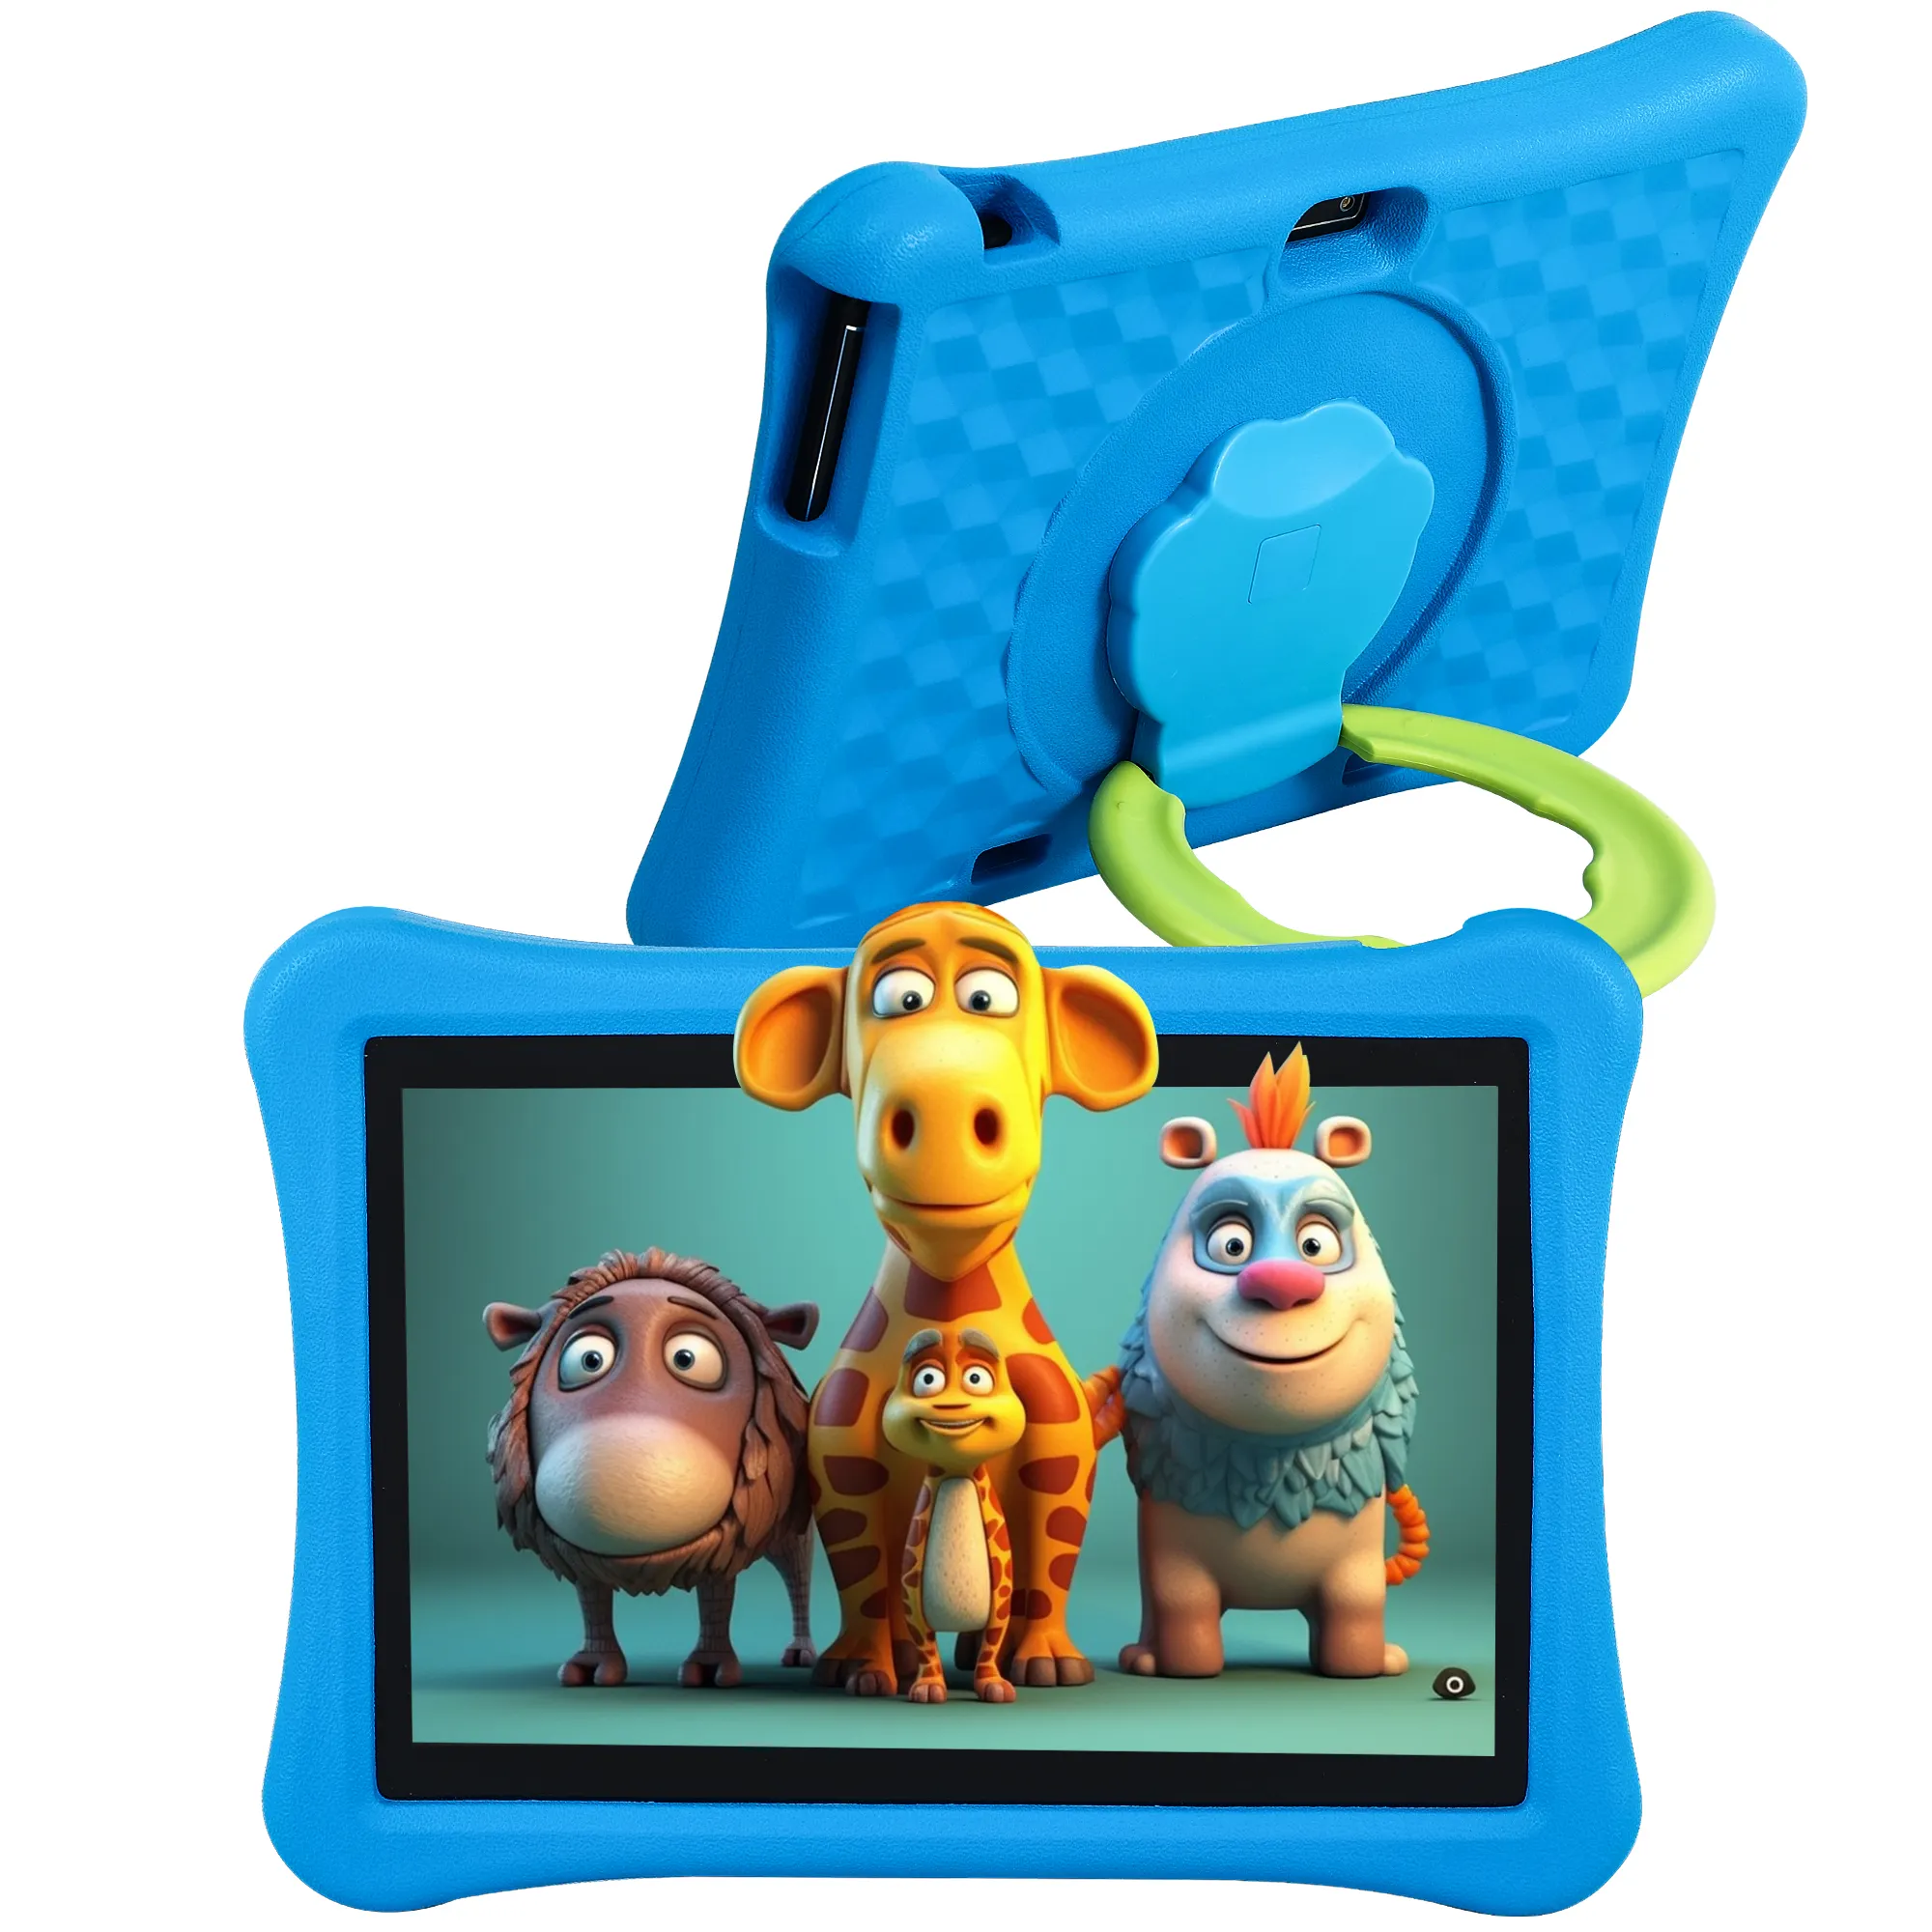 Veidoo 10 Inch Android Kids Tablet Met Dubbele Camera Ouderlijk Toezicht Educatieve 5000Mah Tablet Pc Met Eva Kid-Proof Case